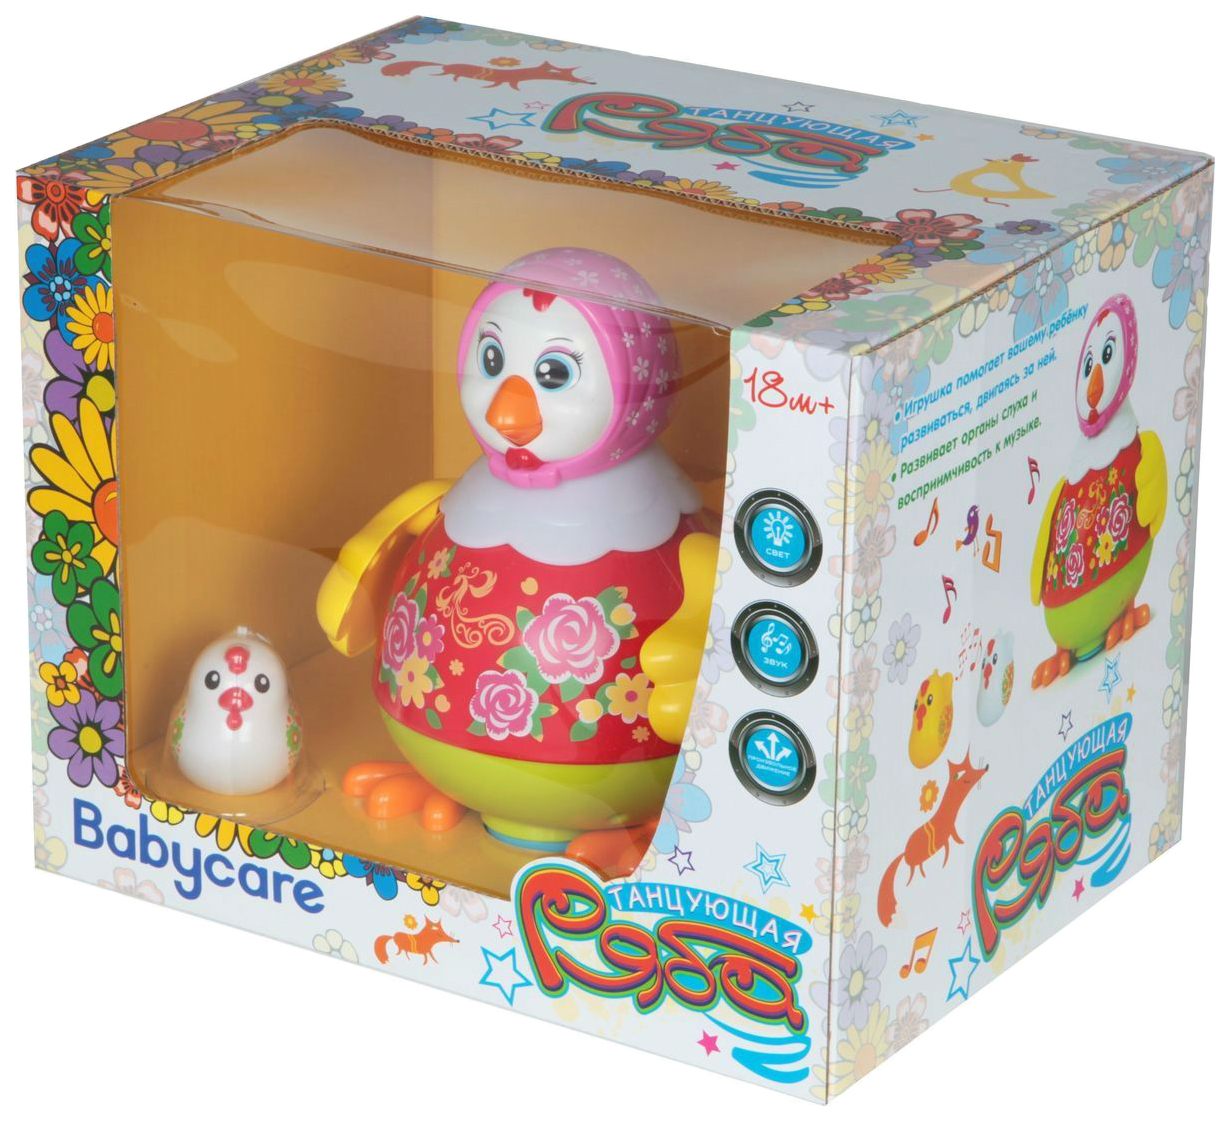 Пляшущая игрушка. Интерактивная развивающая игрушка Babycare. Интерактивная Танцующая игрушка. Интерактивная игрушка курица. Танцующая курица игрушка.